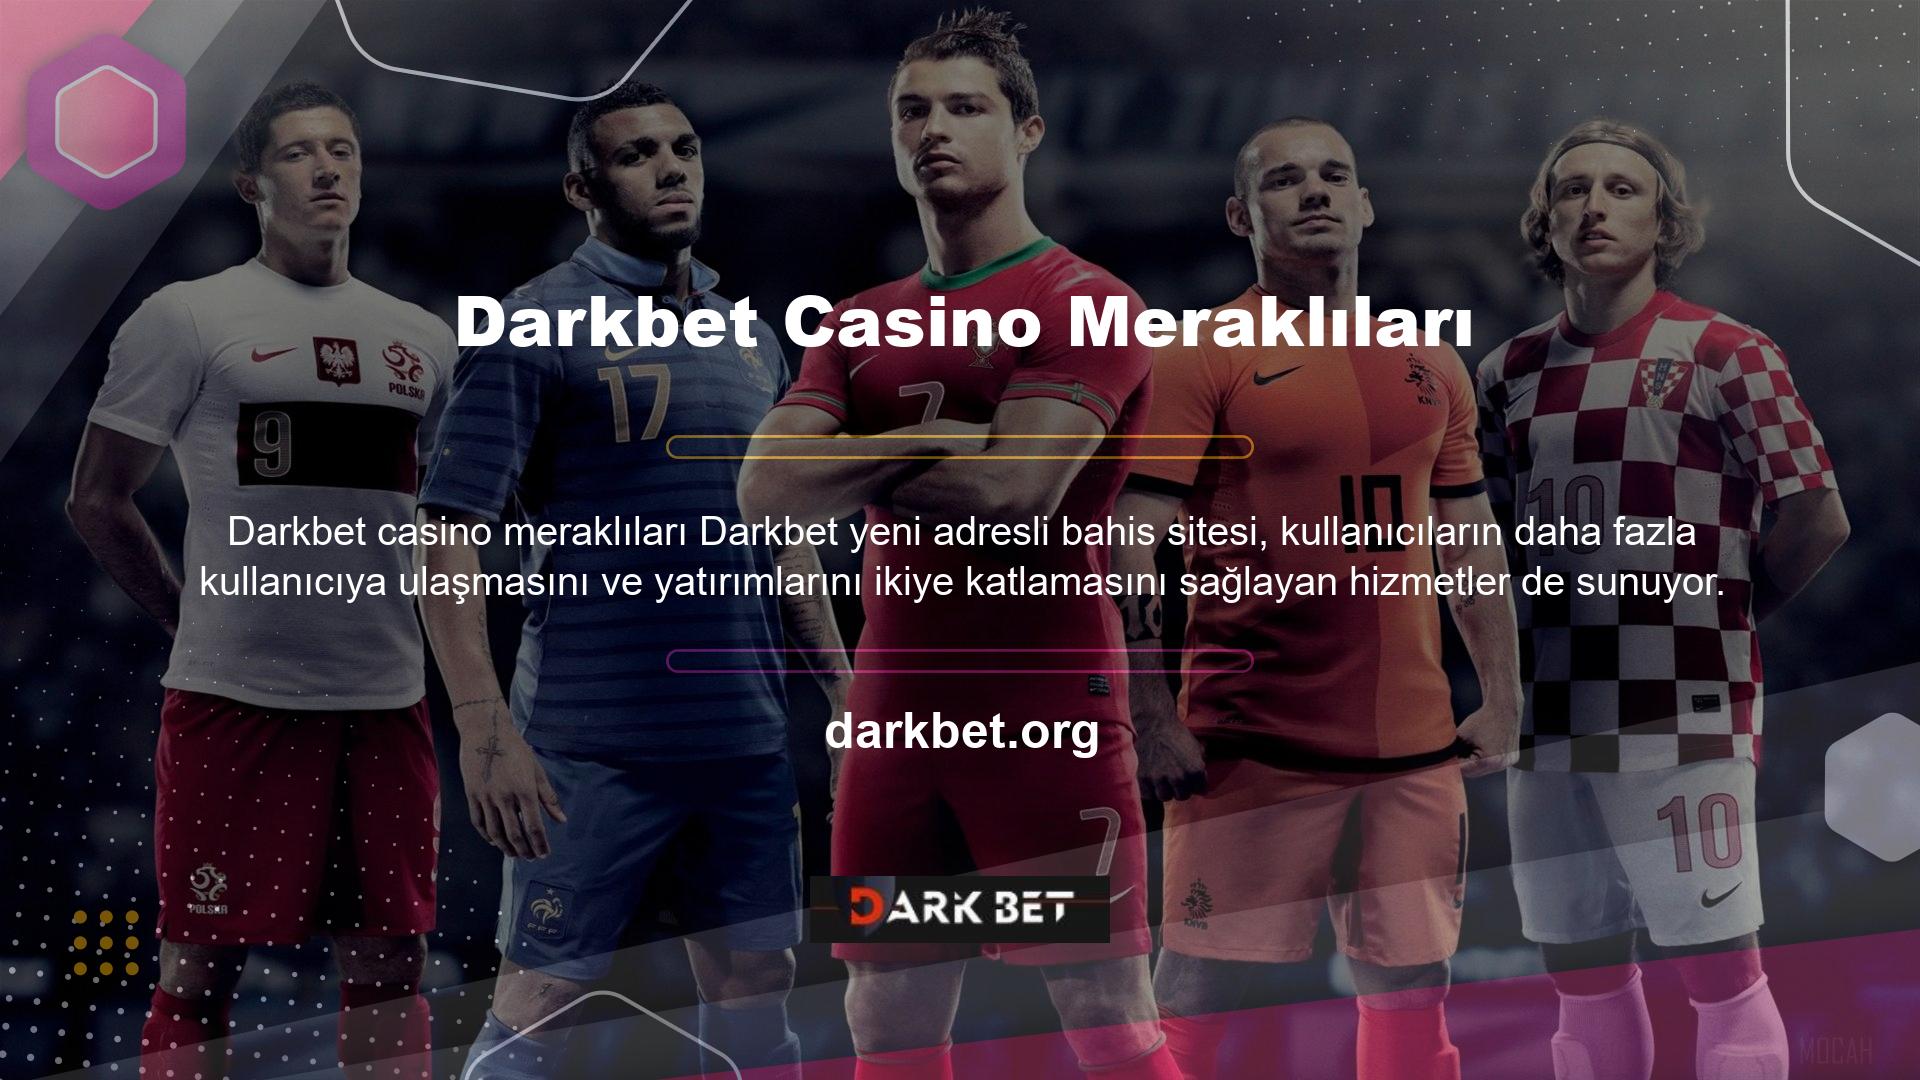 Darkbet yeni adresi bahis sitesi, aldığı lisans sayesinde casino meraklılarına güvenli bir alanda eğlenceli ve keyifli bir oyun hizmeti sunuyor